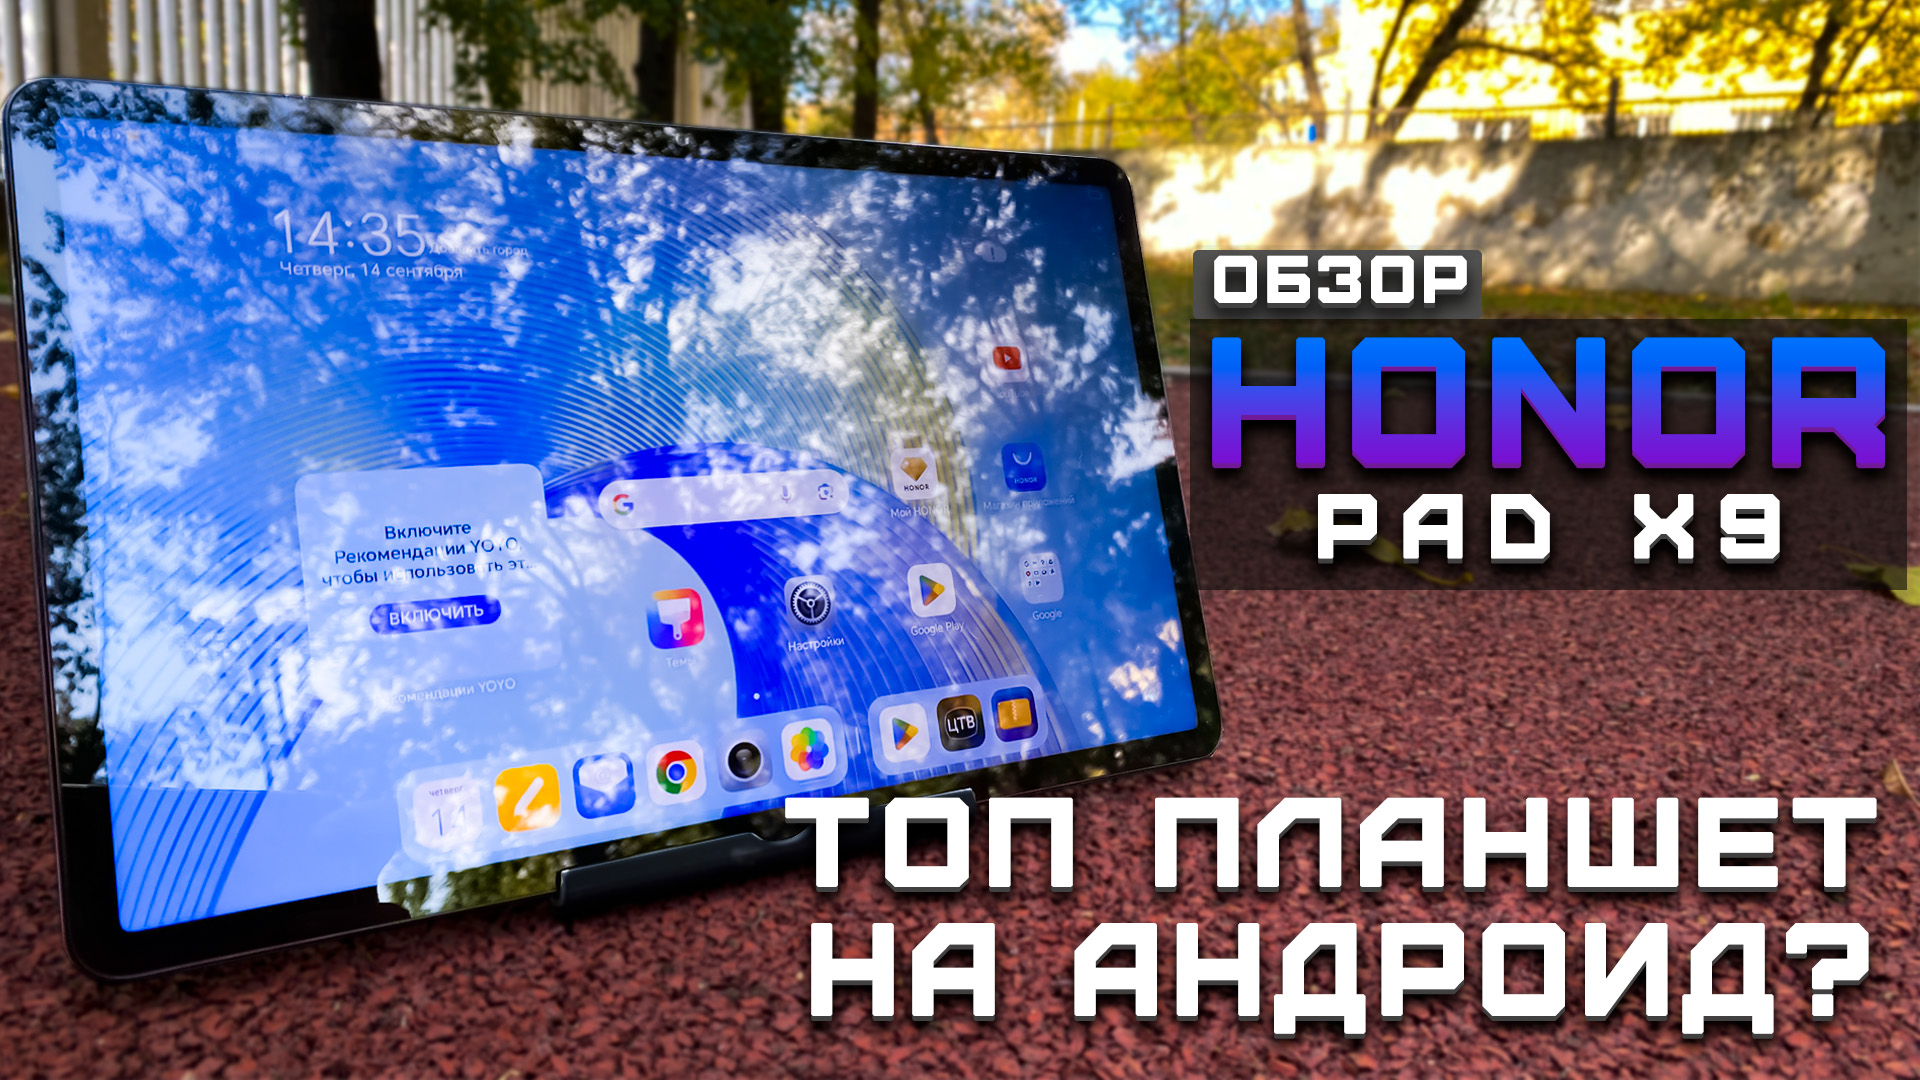 Обзор Honor Pad X9 | Тест планшета в 10 играх ► Топ планшет на Android?